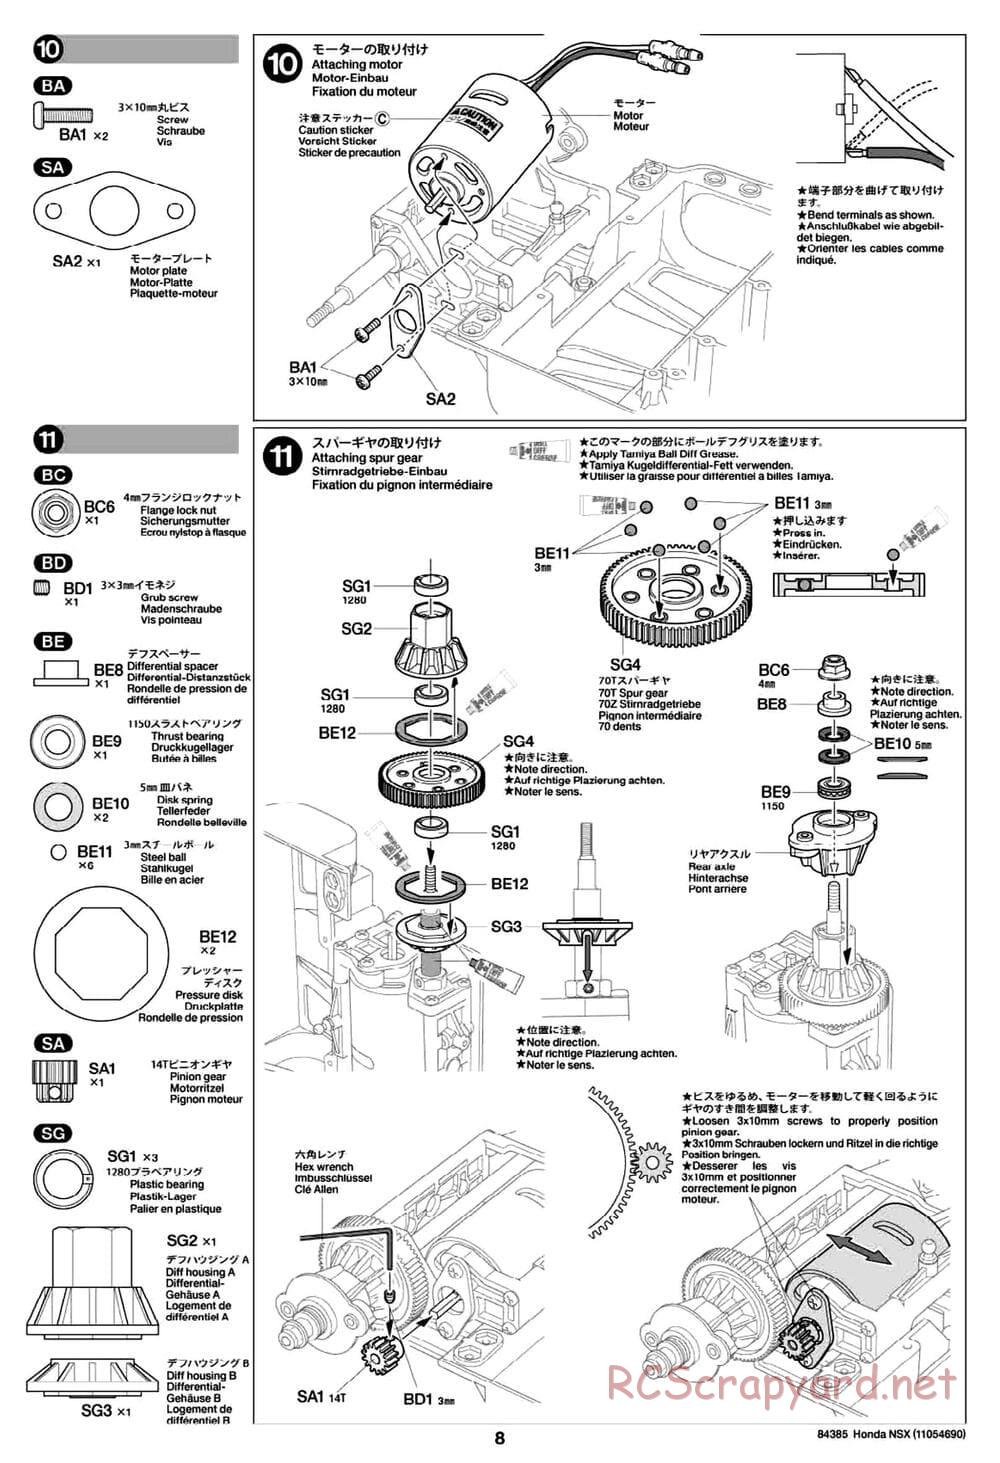 Tamiya - Honda NSX - Group-C Chassis - Manual - Page 8